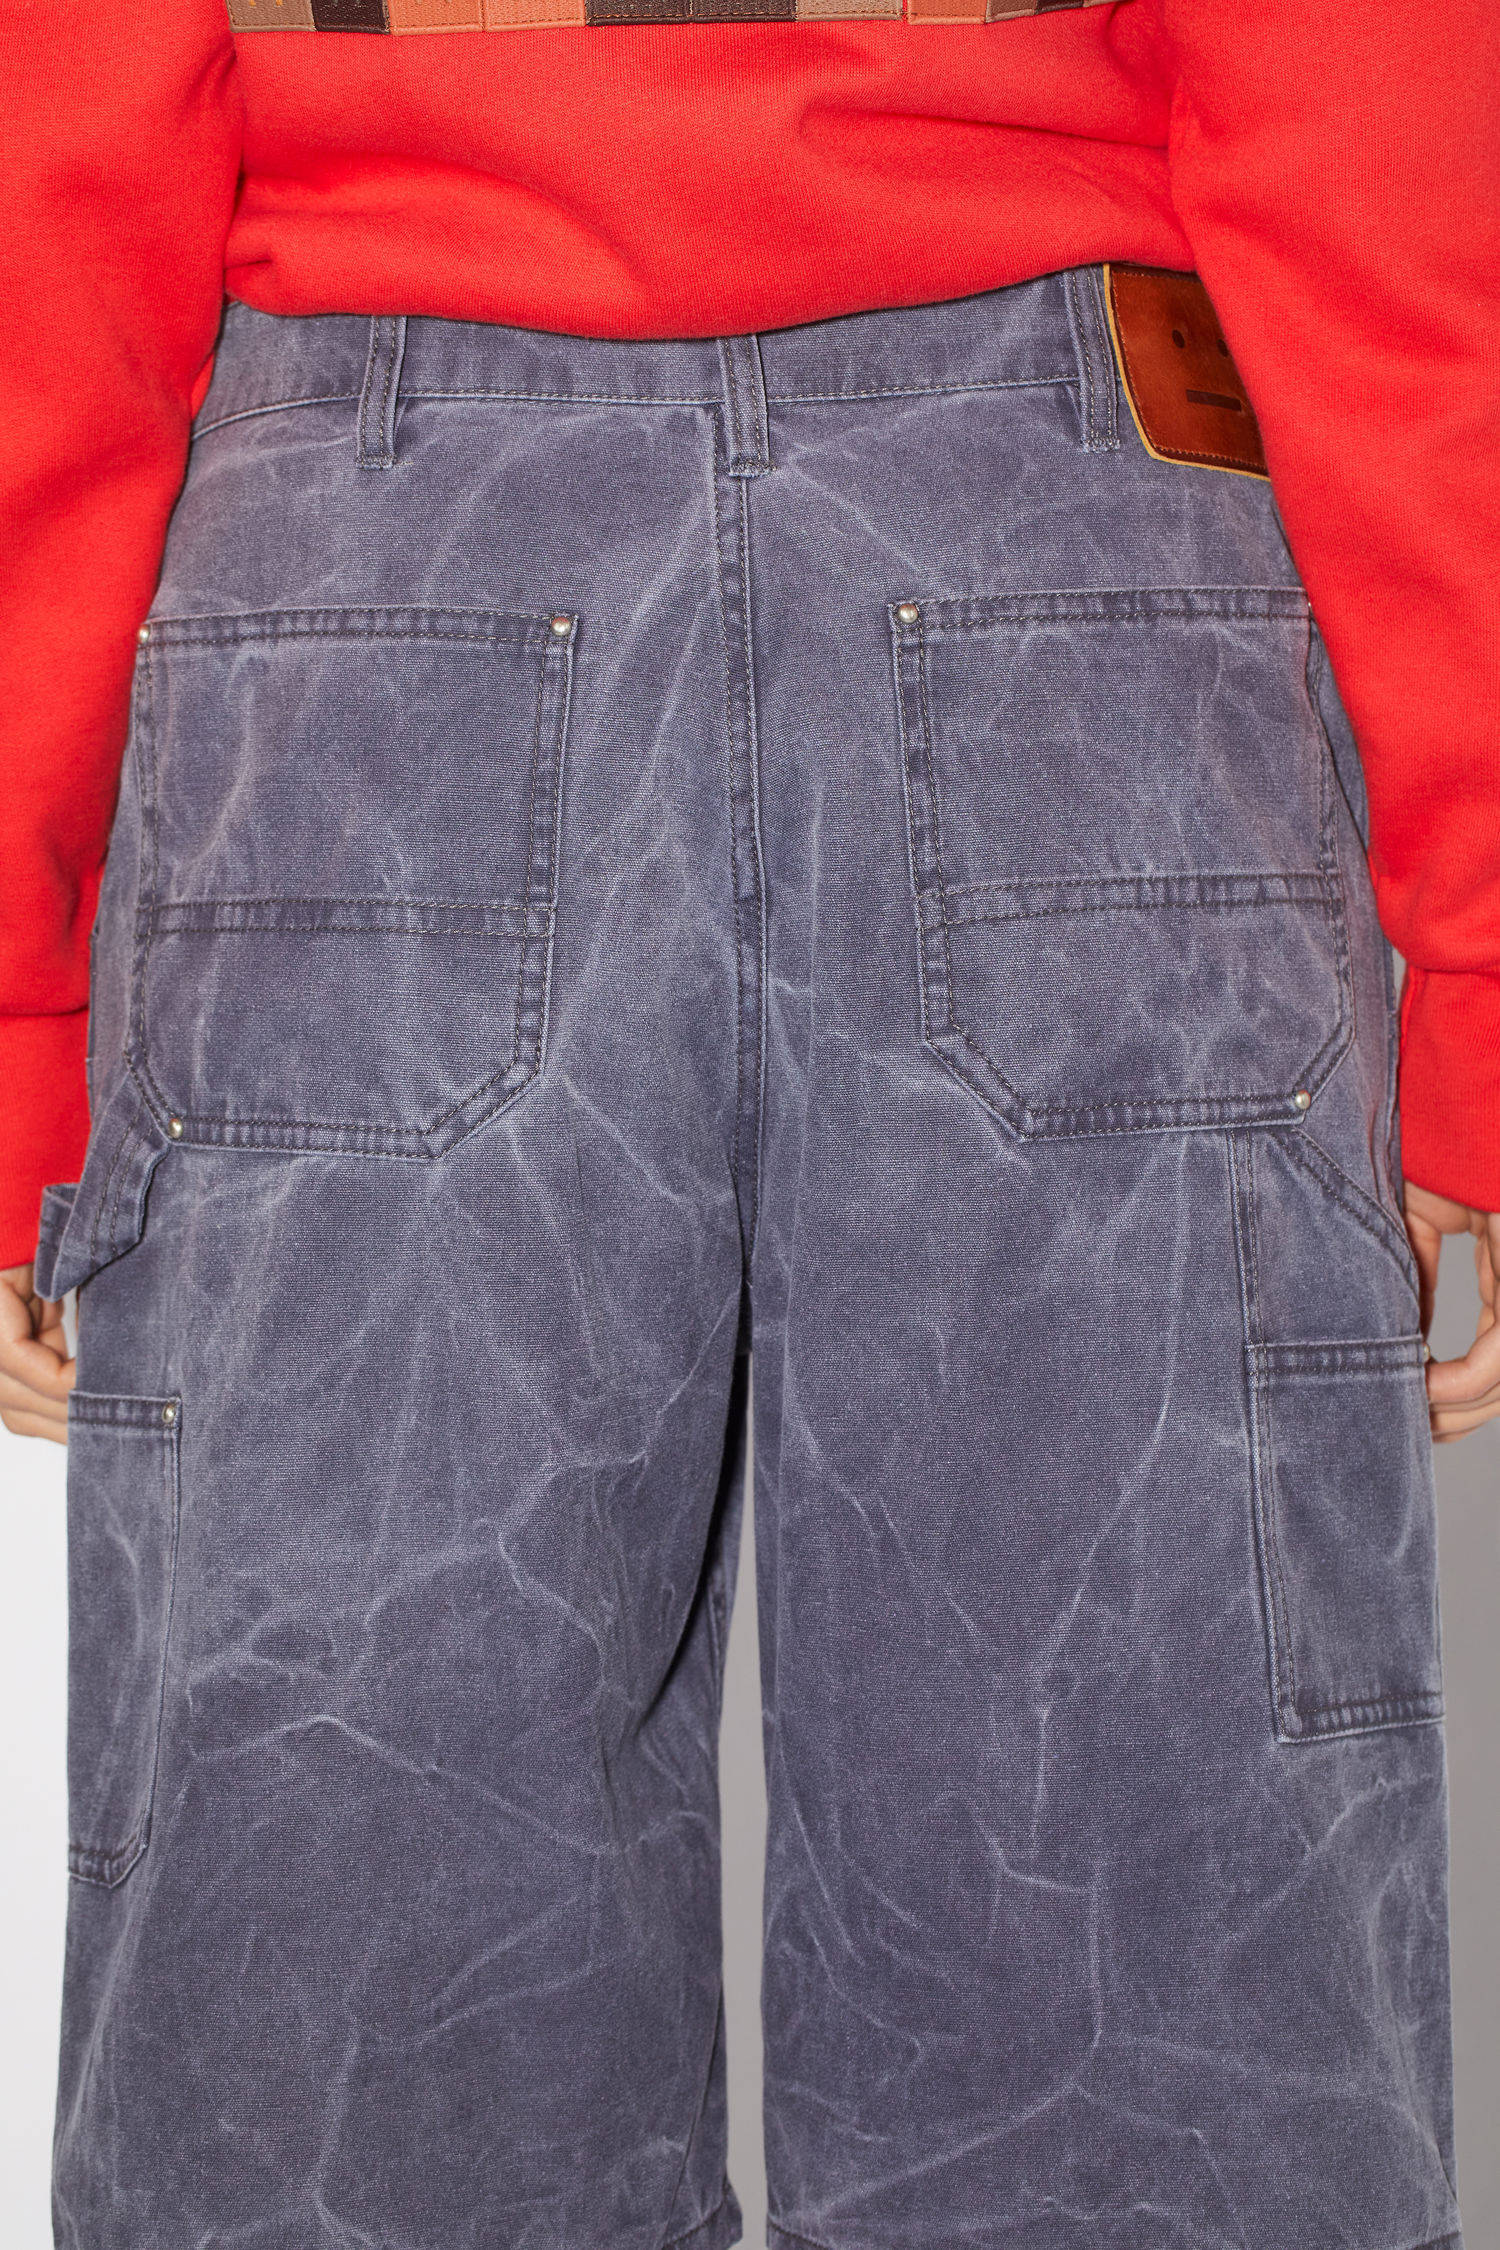 Acne Studios - Workwear shorts Indigo blue